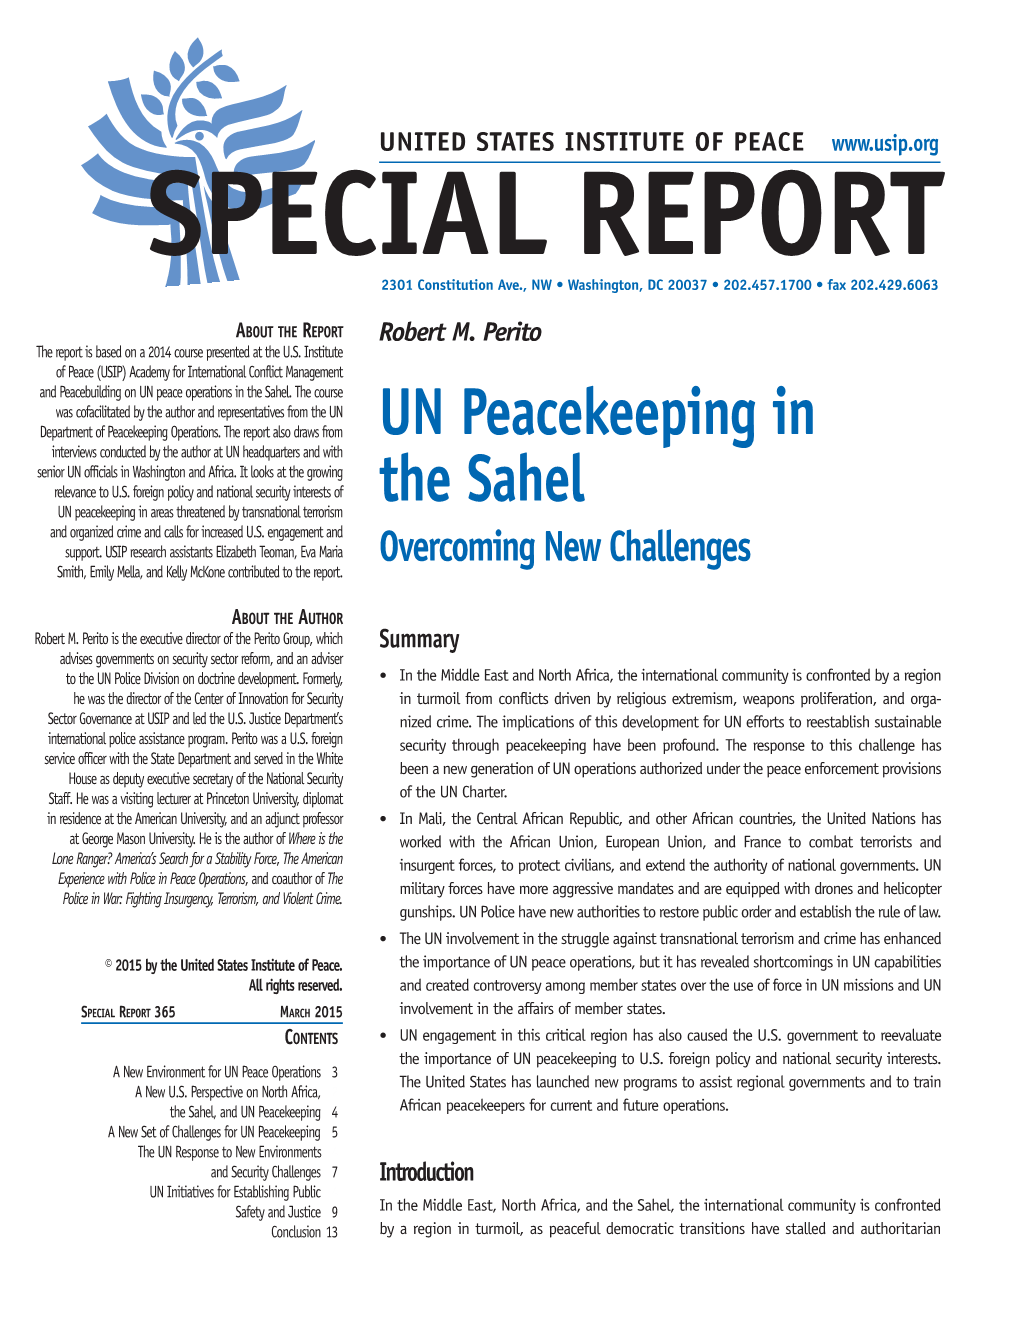 UN Peacekeeping in the Sahel